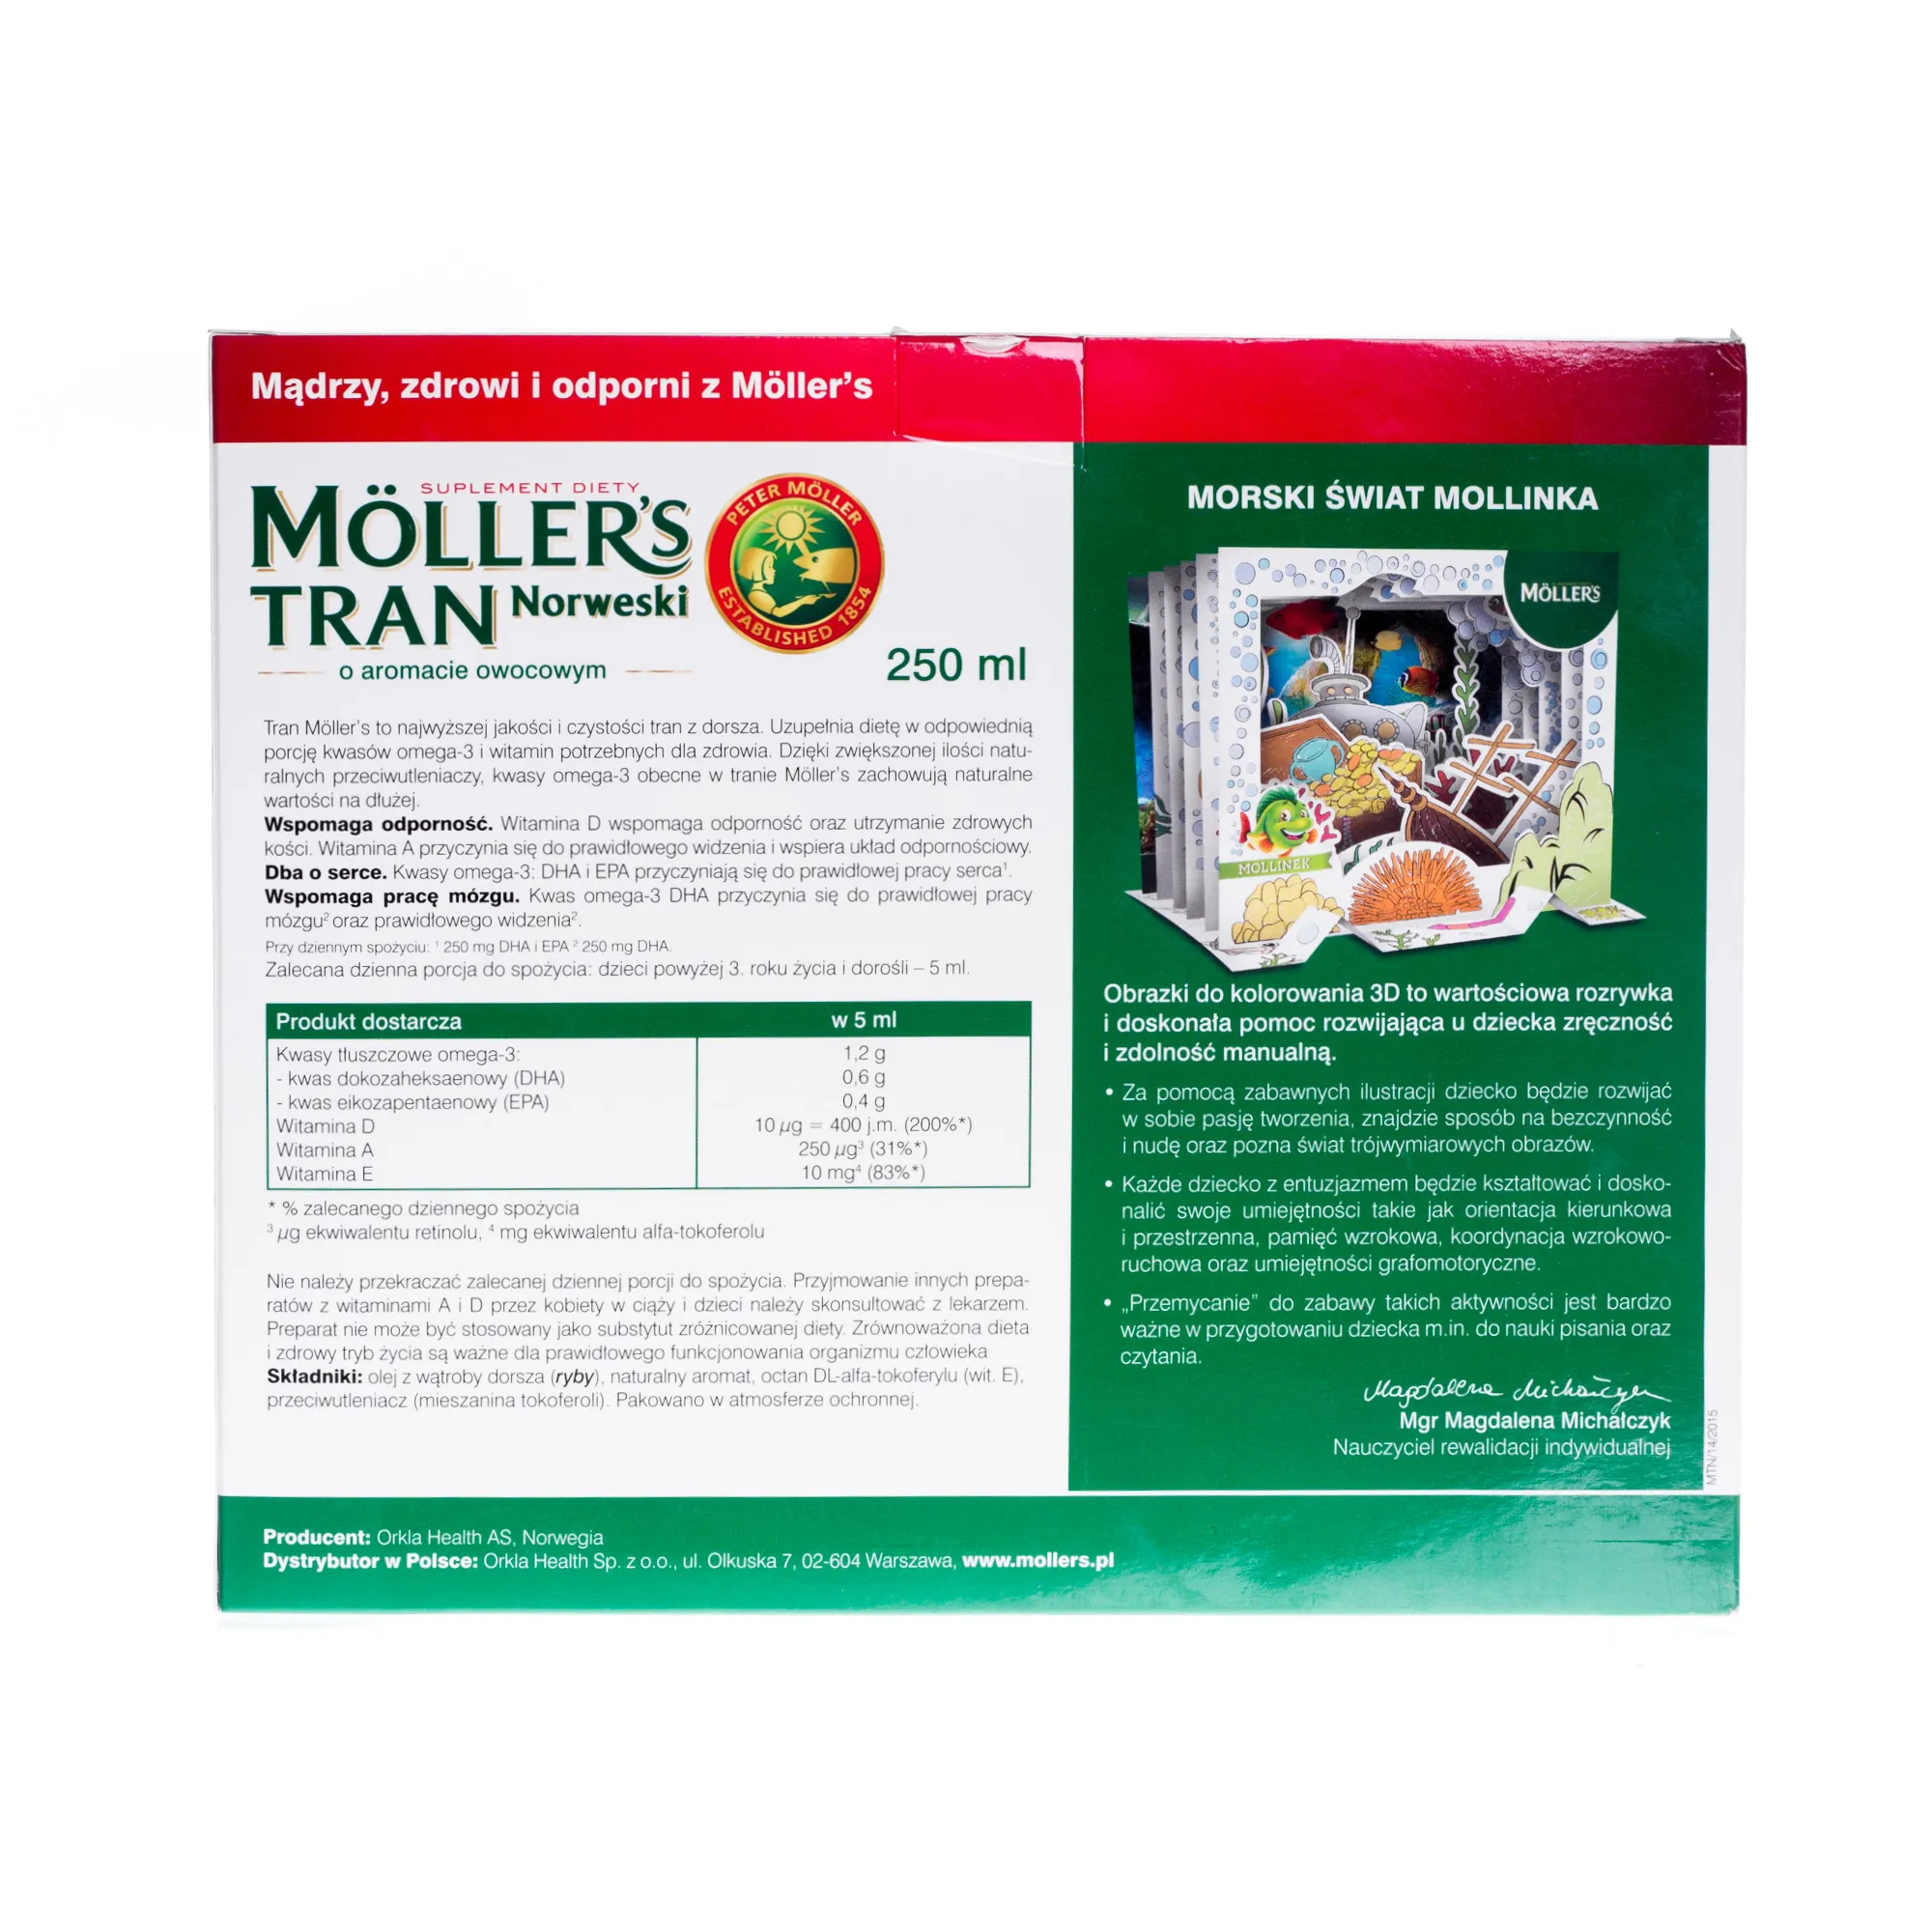 Moller's Tran Norweski o aromacie owocowym + akwarium 3D, 250 ml 